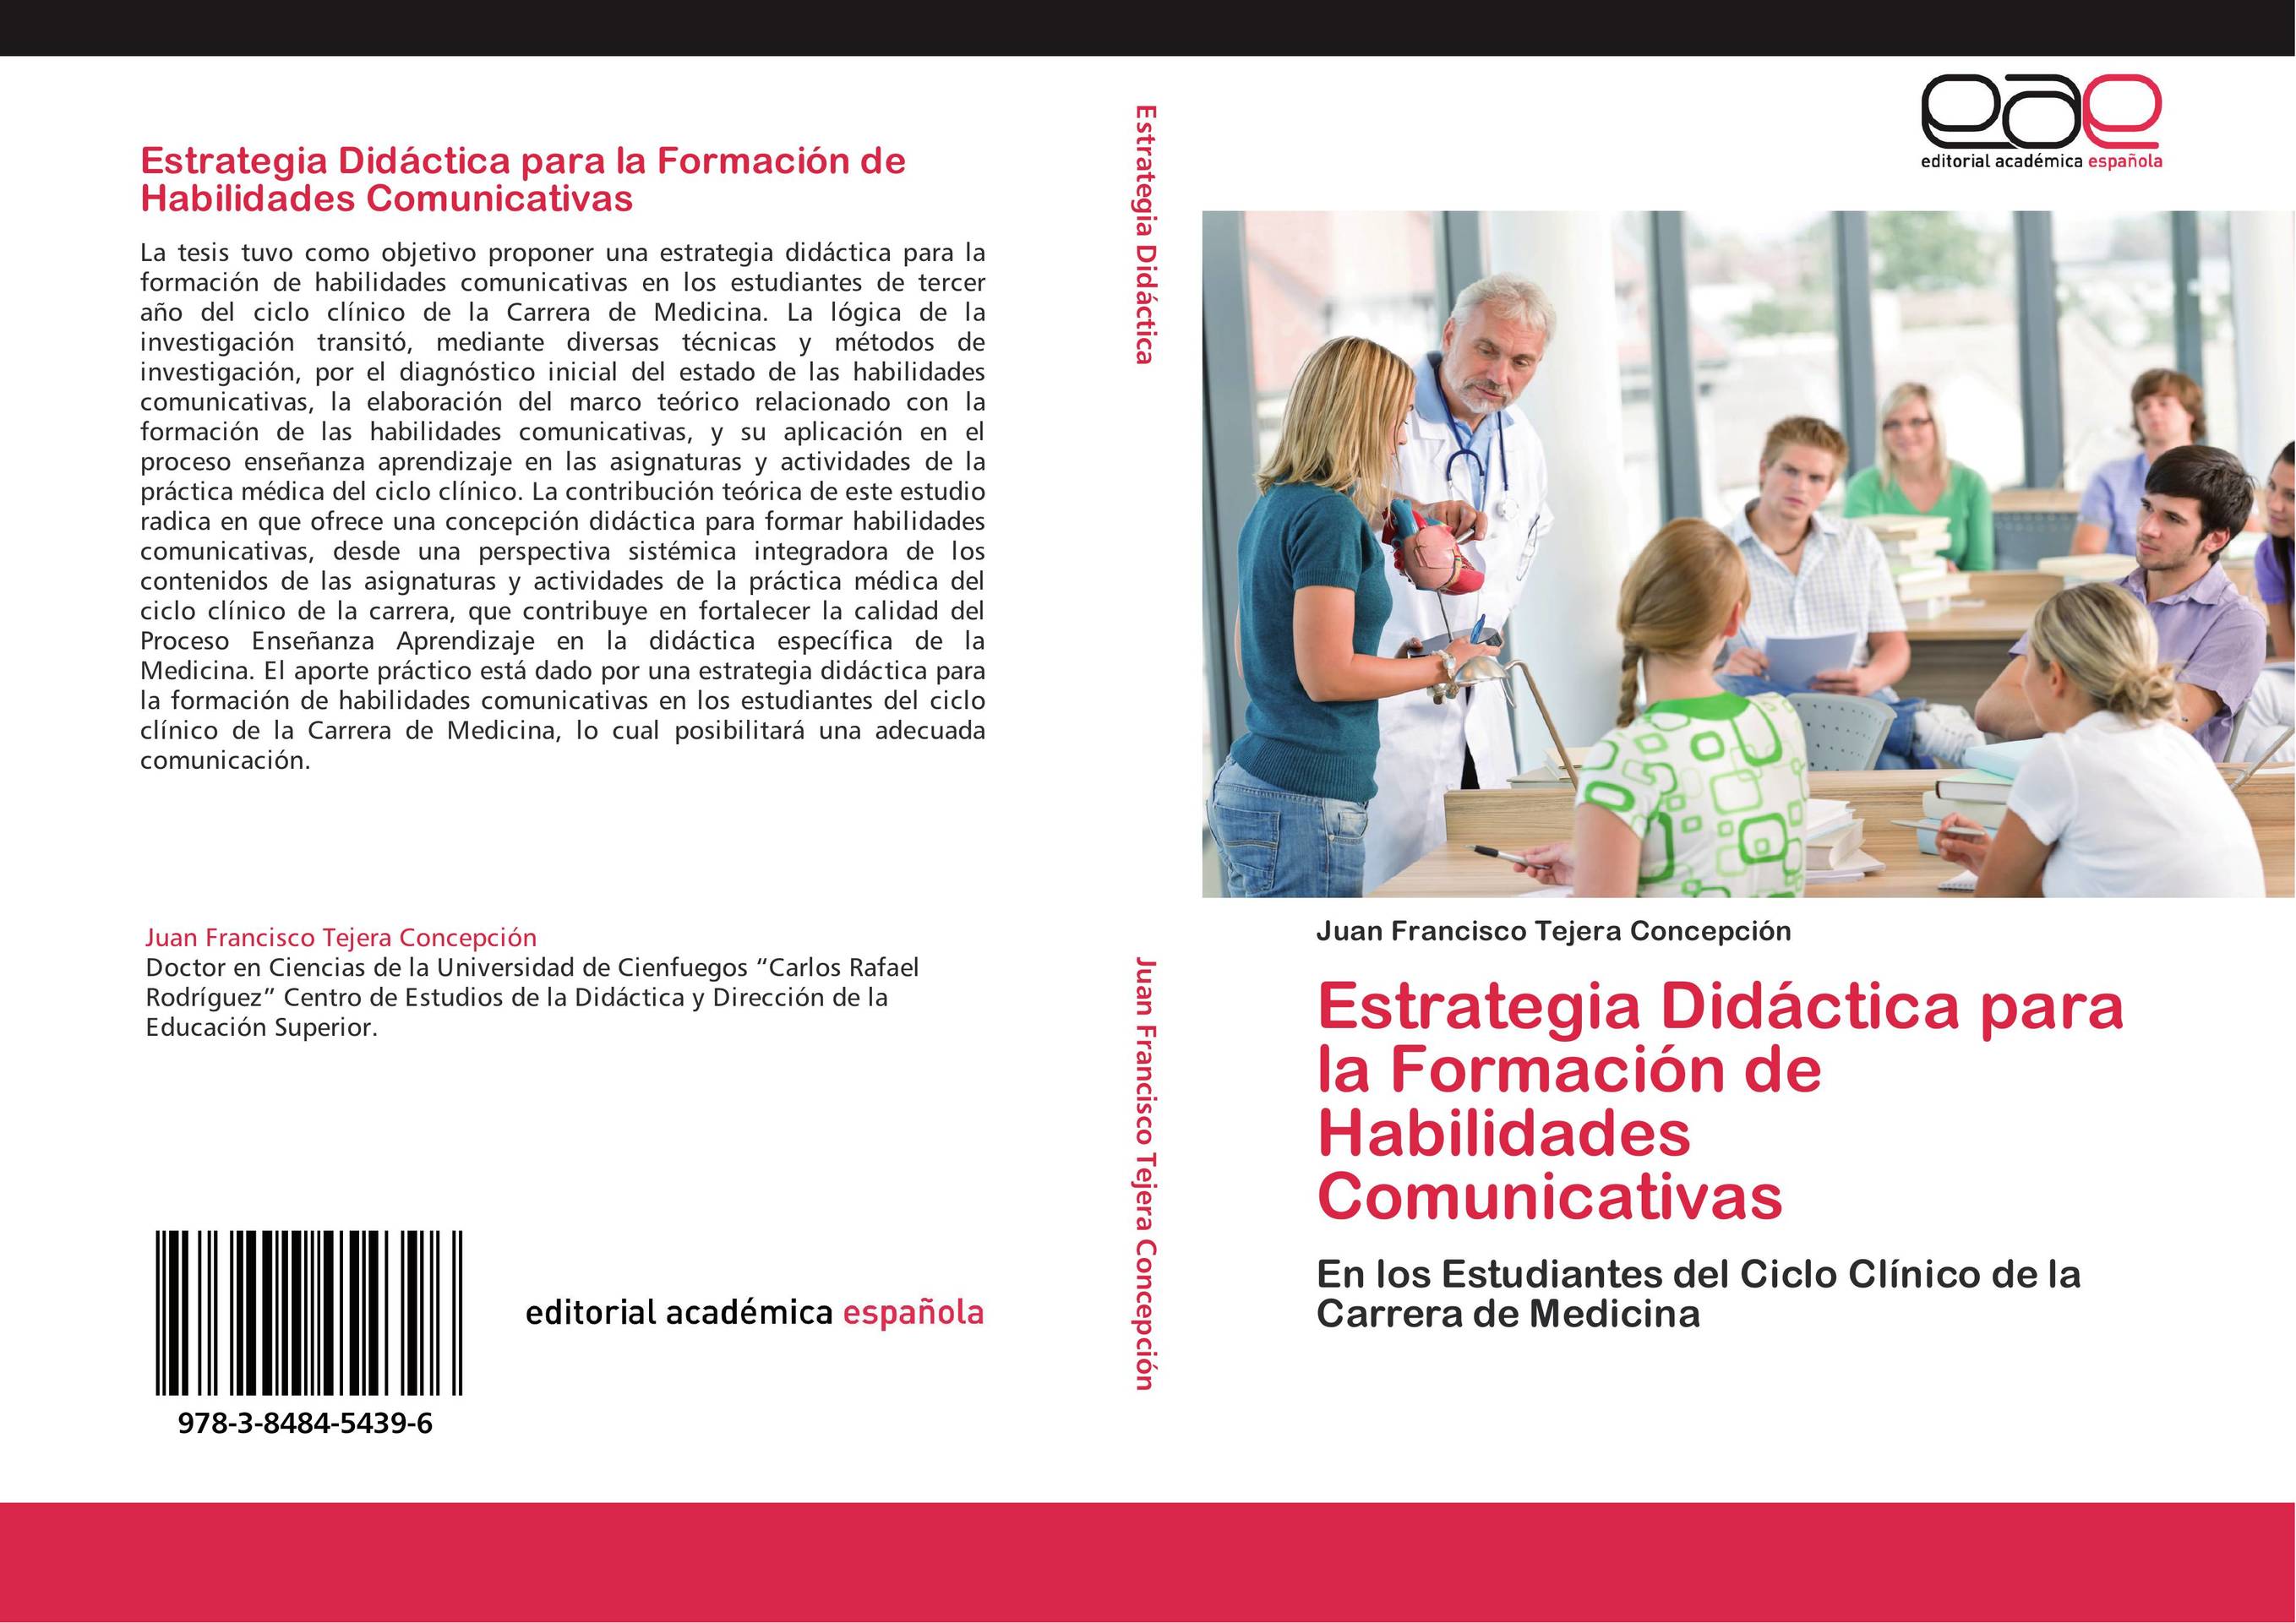 Estrategia Didáctica para la Formación de Habilidades Comunicativas